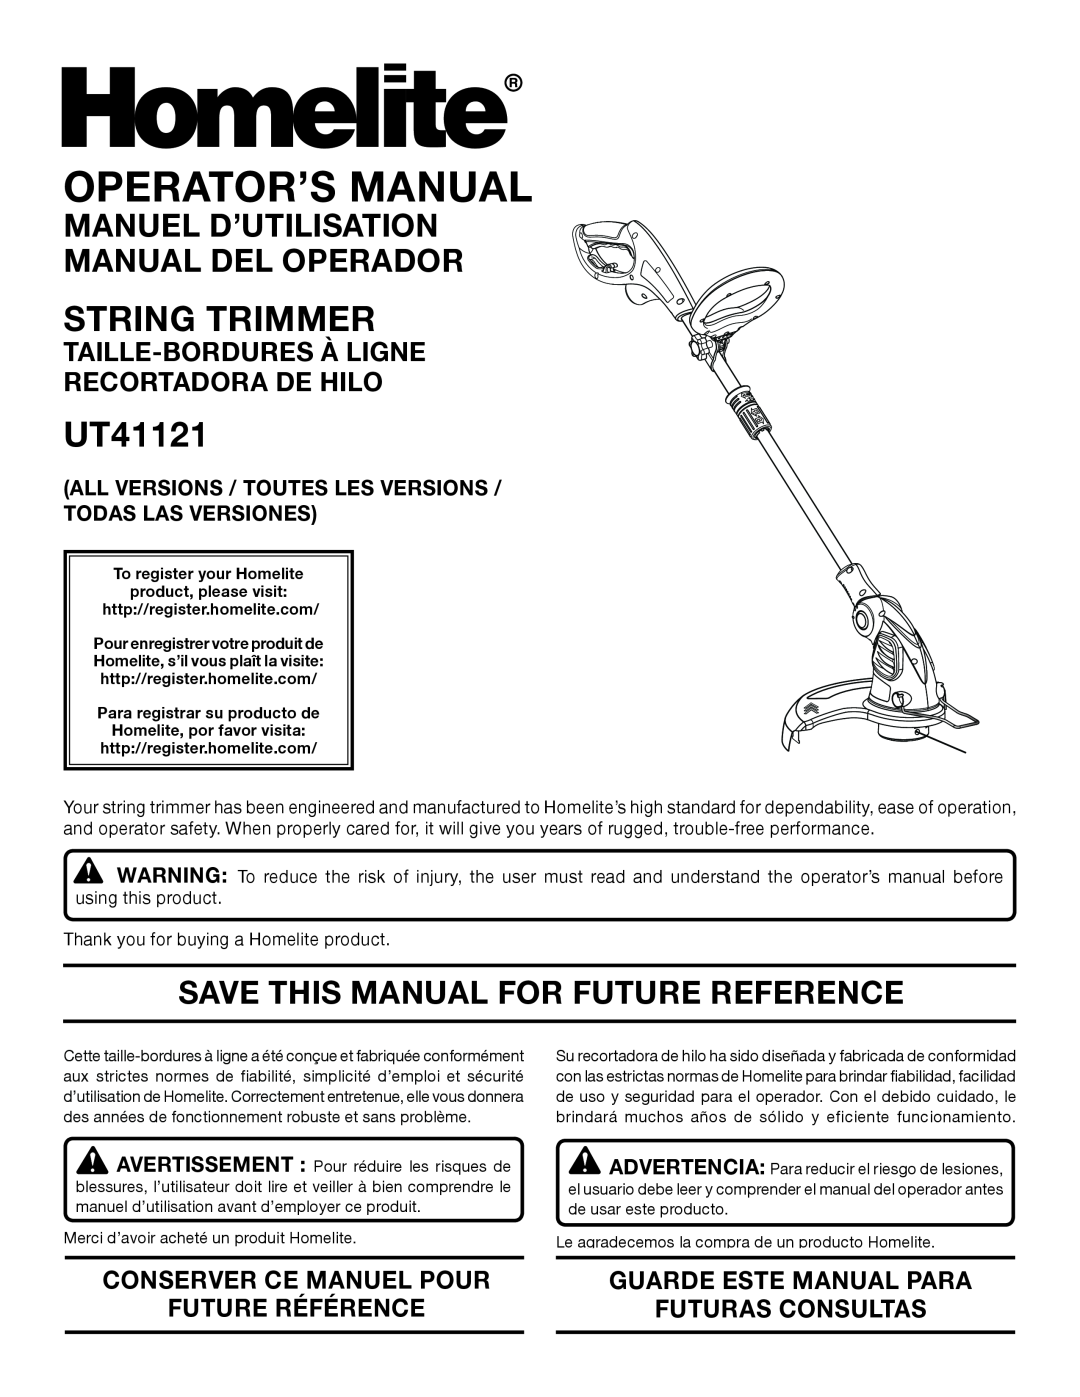 Homelite UT41121 manuel dutilisation String Trimmer, Manuel D’Utilisation Manual Del Operador, Operator’S Manual 